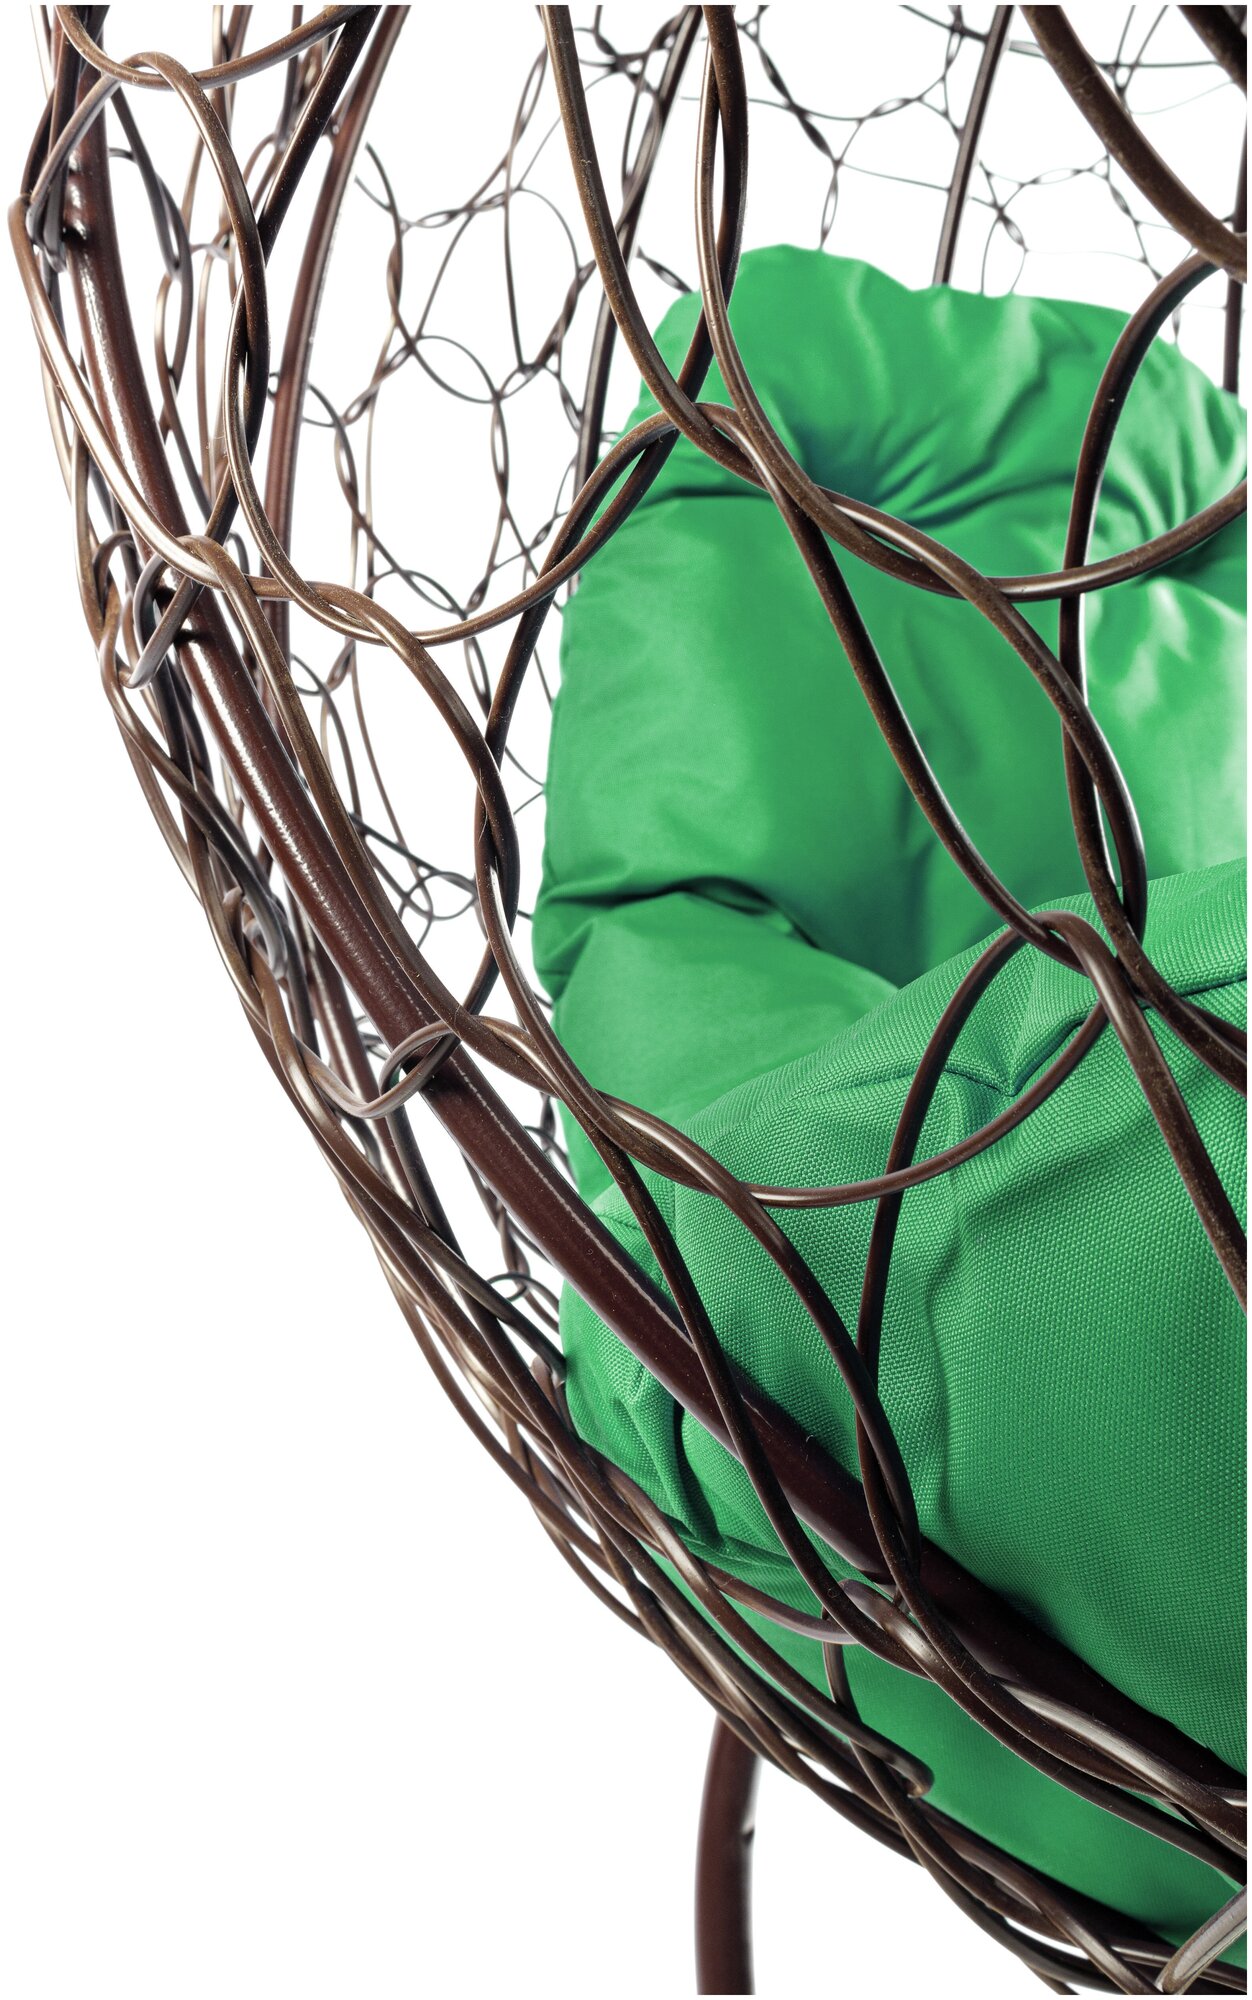 Кресло m-group круг на подставке ротанг коричневое, зелёная подушка - фотография № 12